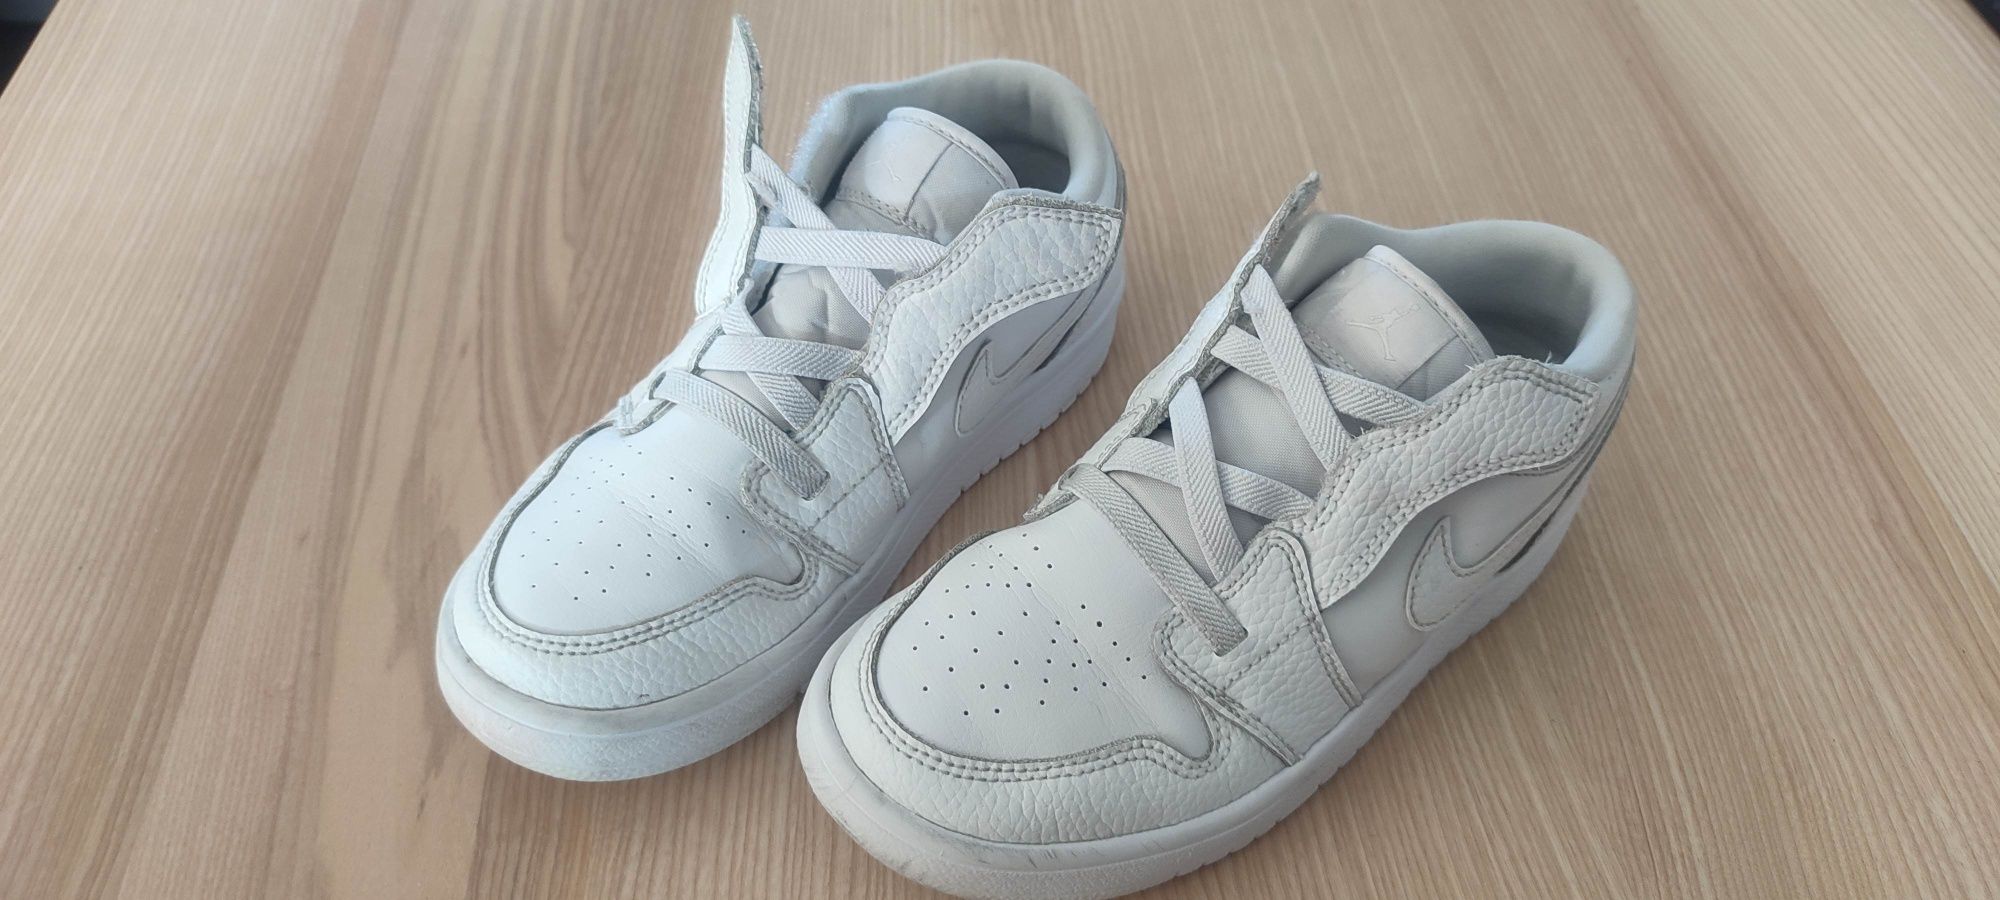 Nike Jordan adidasy sneakersy r. 33